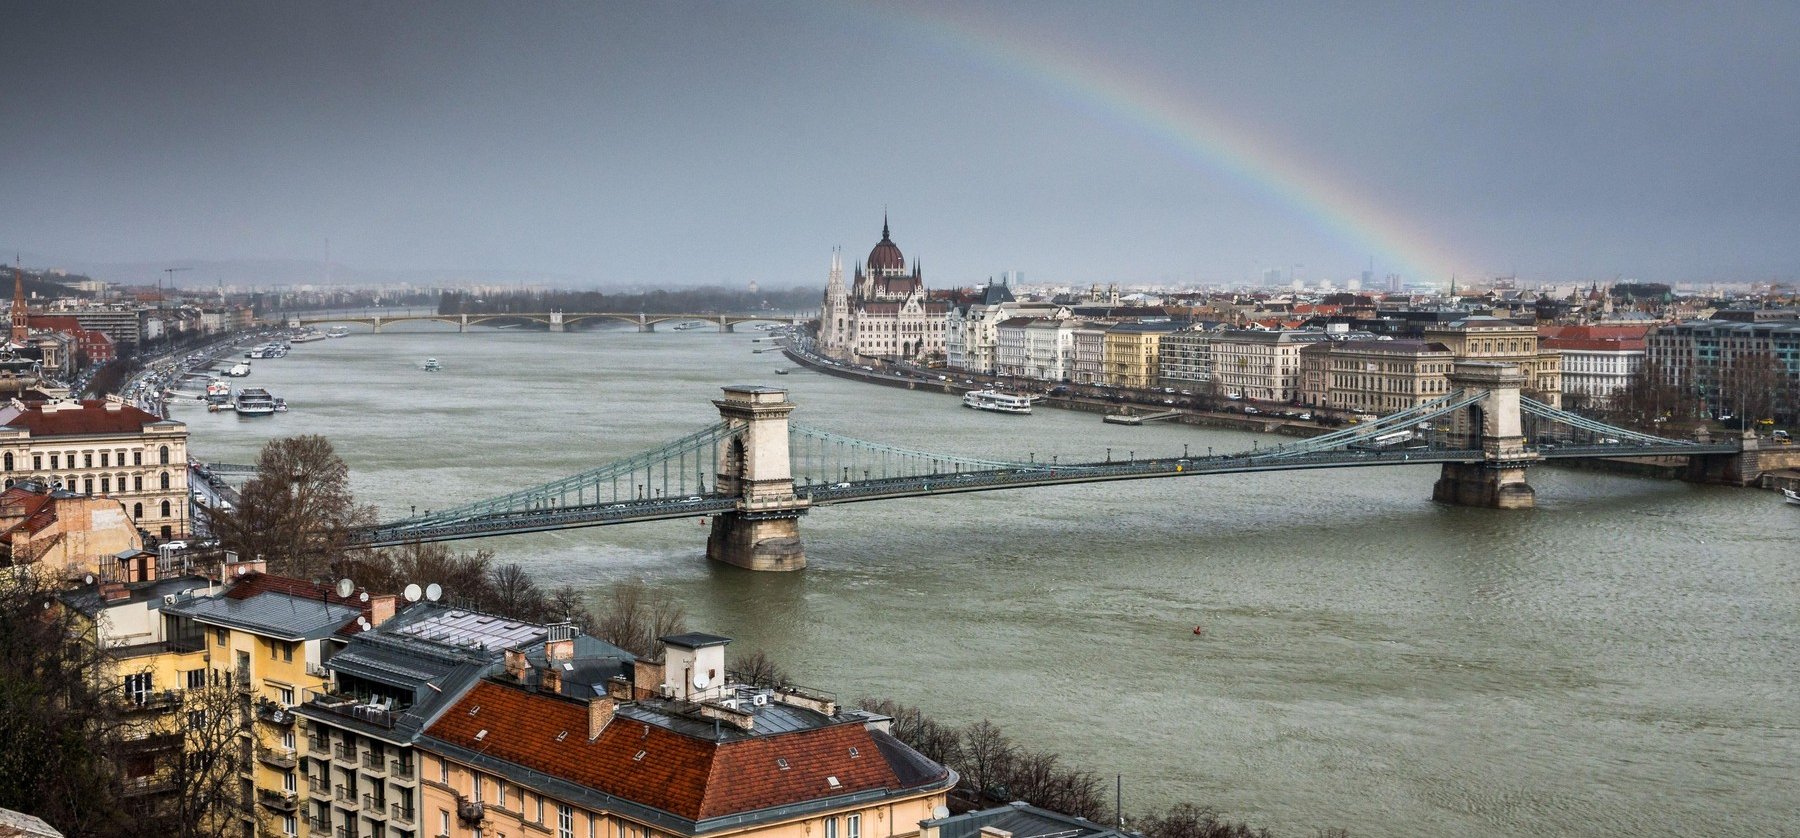 Óriási dolgot találtak a Duna mélyén Magyarországon, a búvárok még nem tudták felszínre hozni